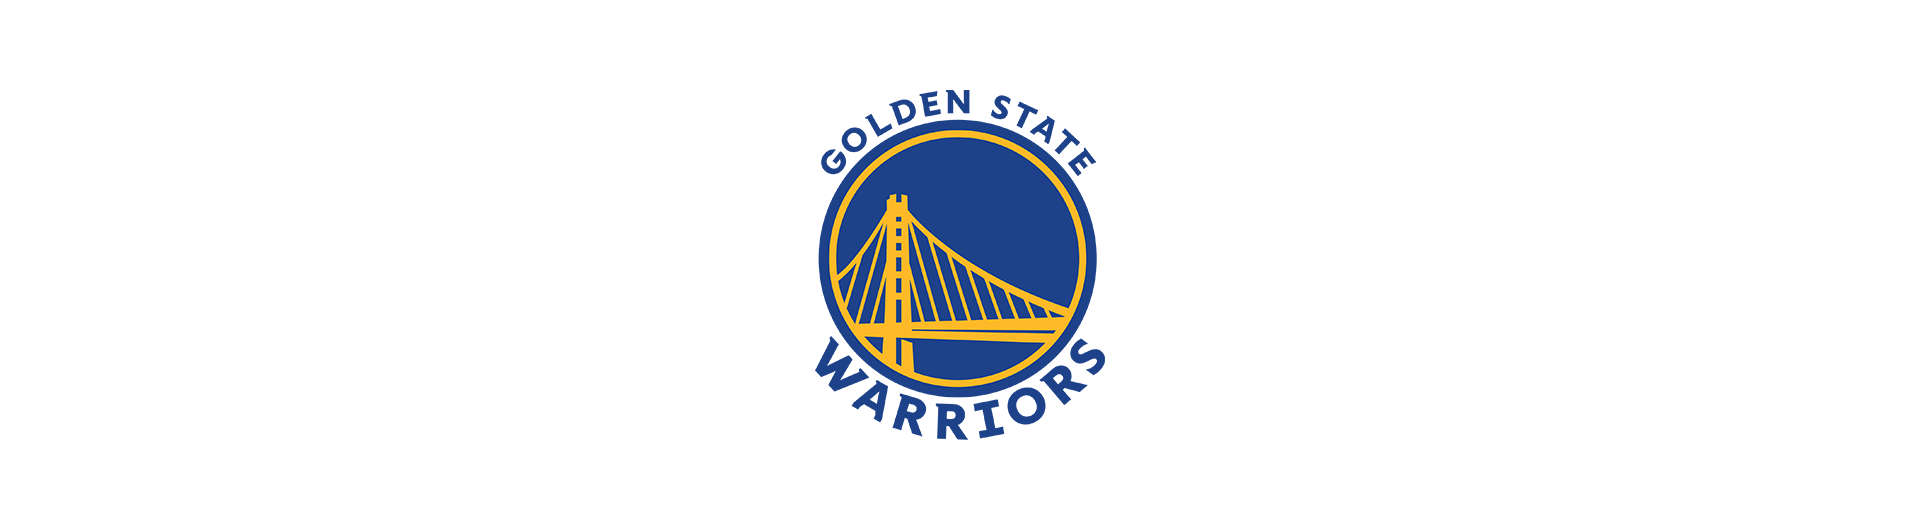 Golden State Warriors (GSW)